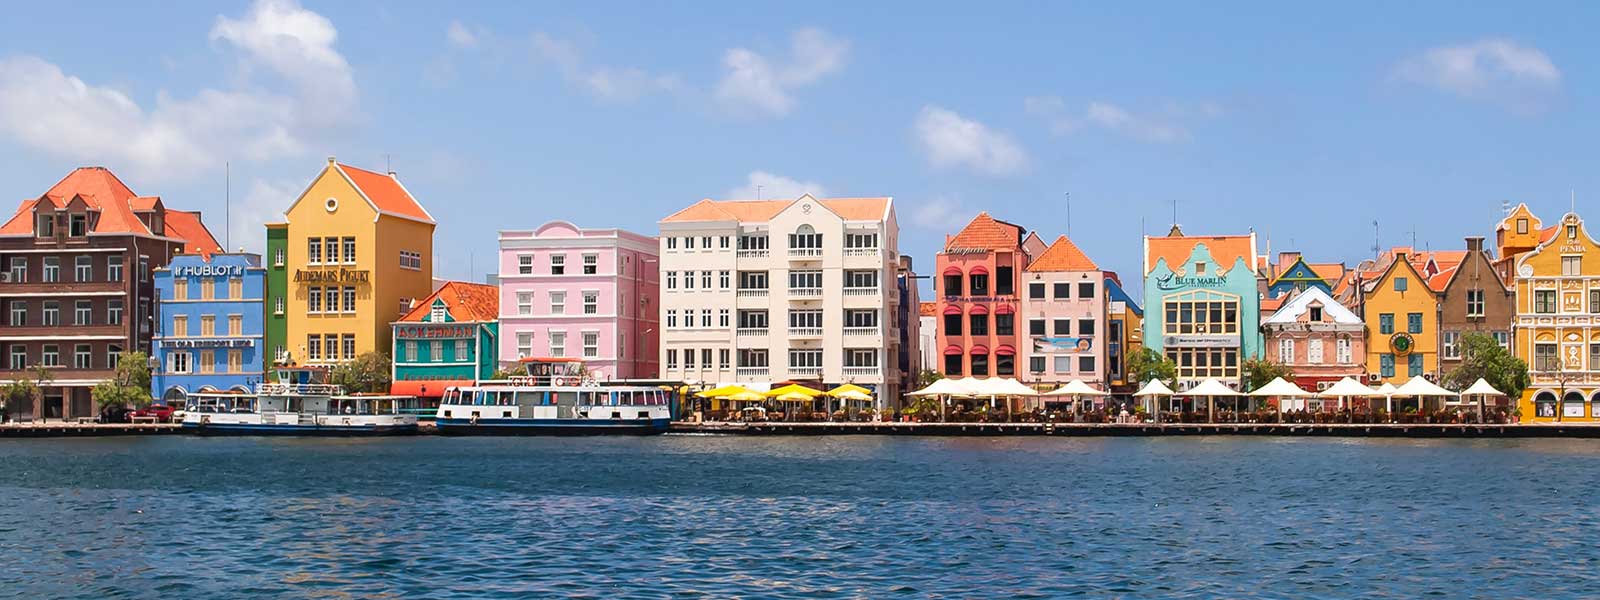 Uitzicht op de kleurrijke huisjes aan de kade op Curacao